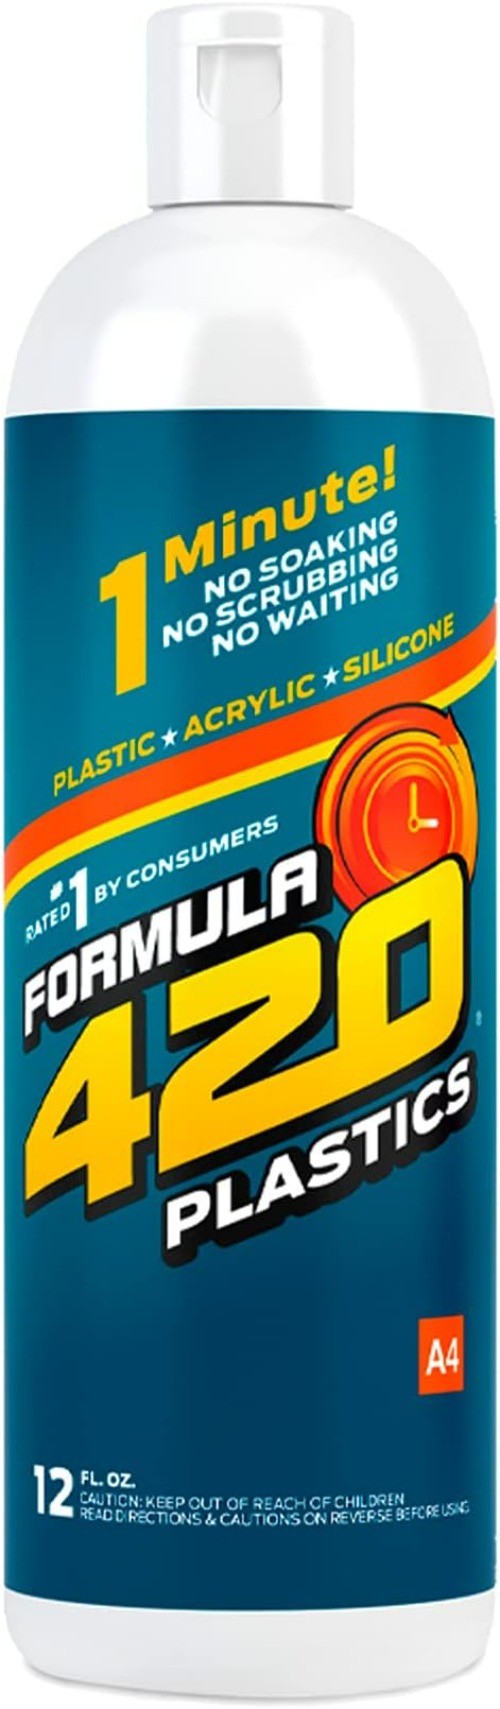 FORMULA 420 PLASTICS & SILICONE CLEANER 12 oz